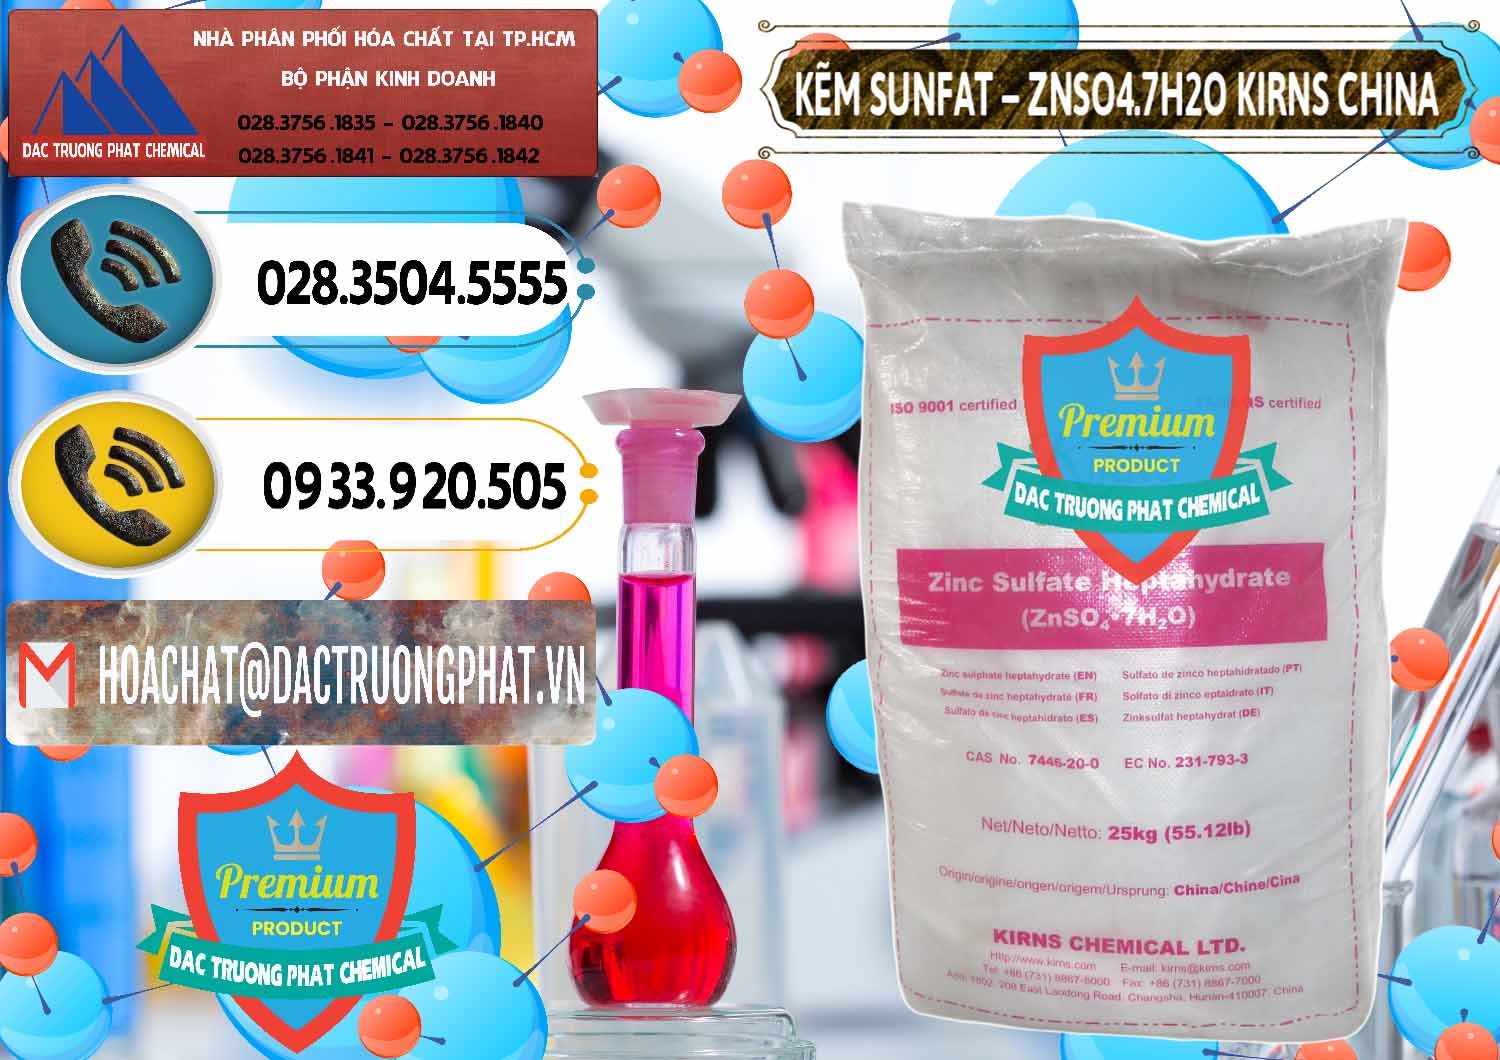 Cty chuyên bán và cung ứng Kẽm Sunfat – ZNSO4.7H2O Kirns Trung Quốc China - 0089 - Cung cấp & bán hóa chất tại TP.HCM - hoachatdetnhuom.vn